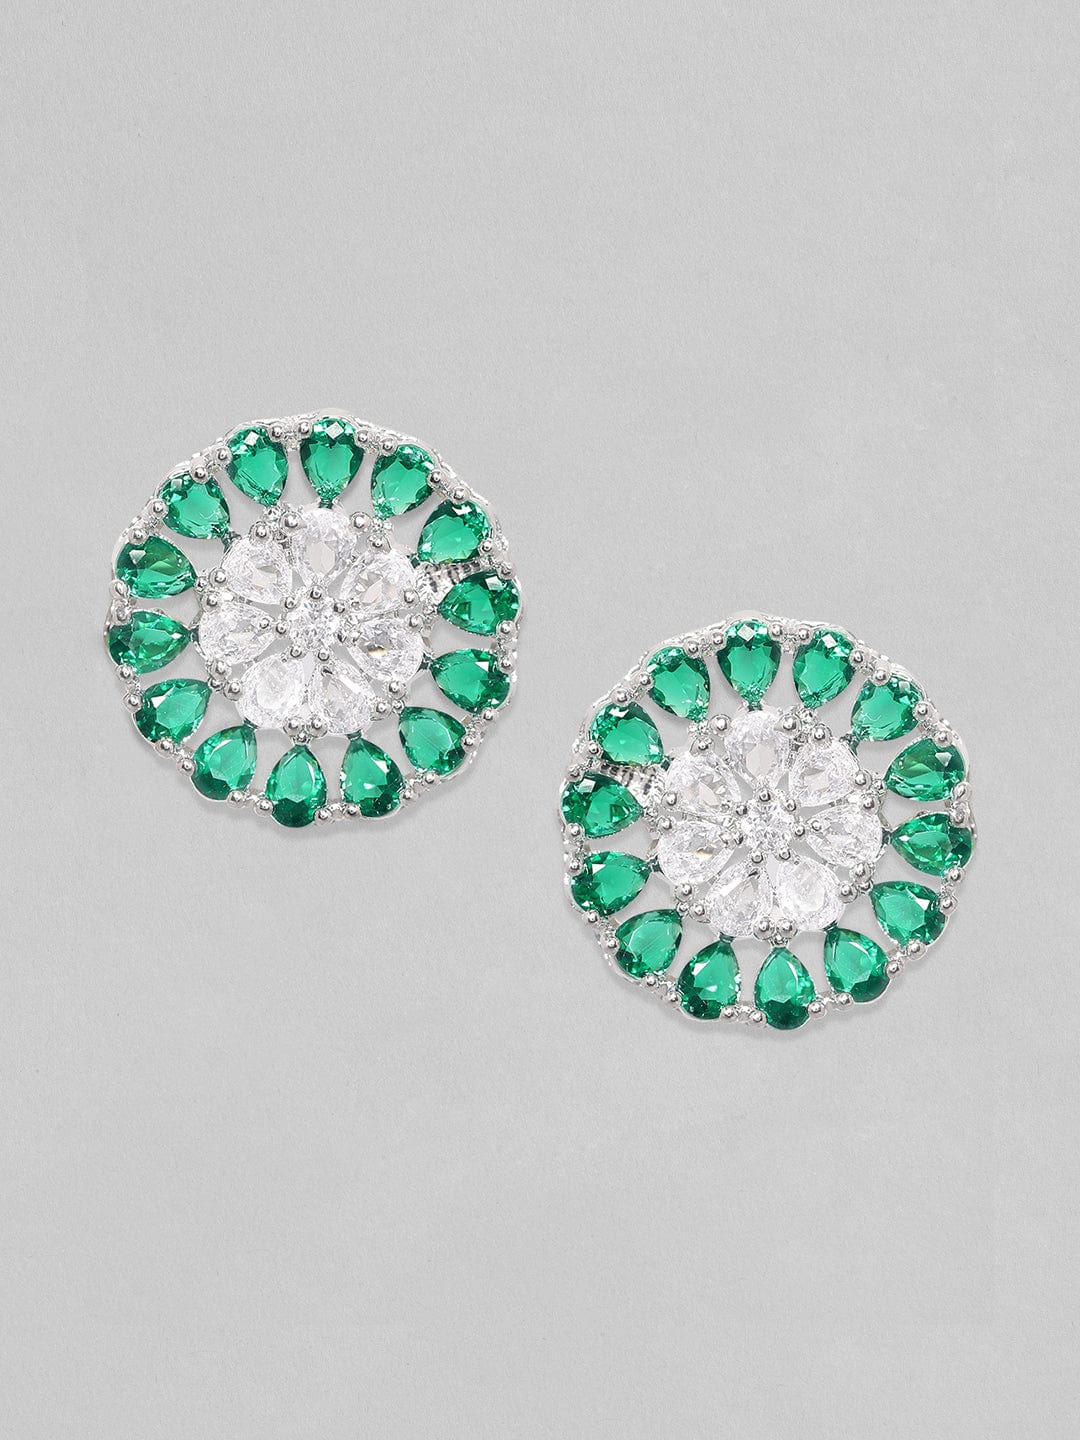 Rubans Silver-Toned  Green Circular Studs Earrings Earrings